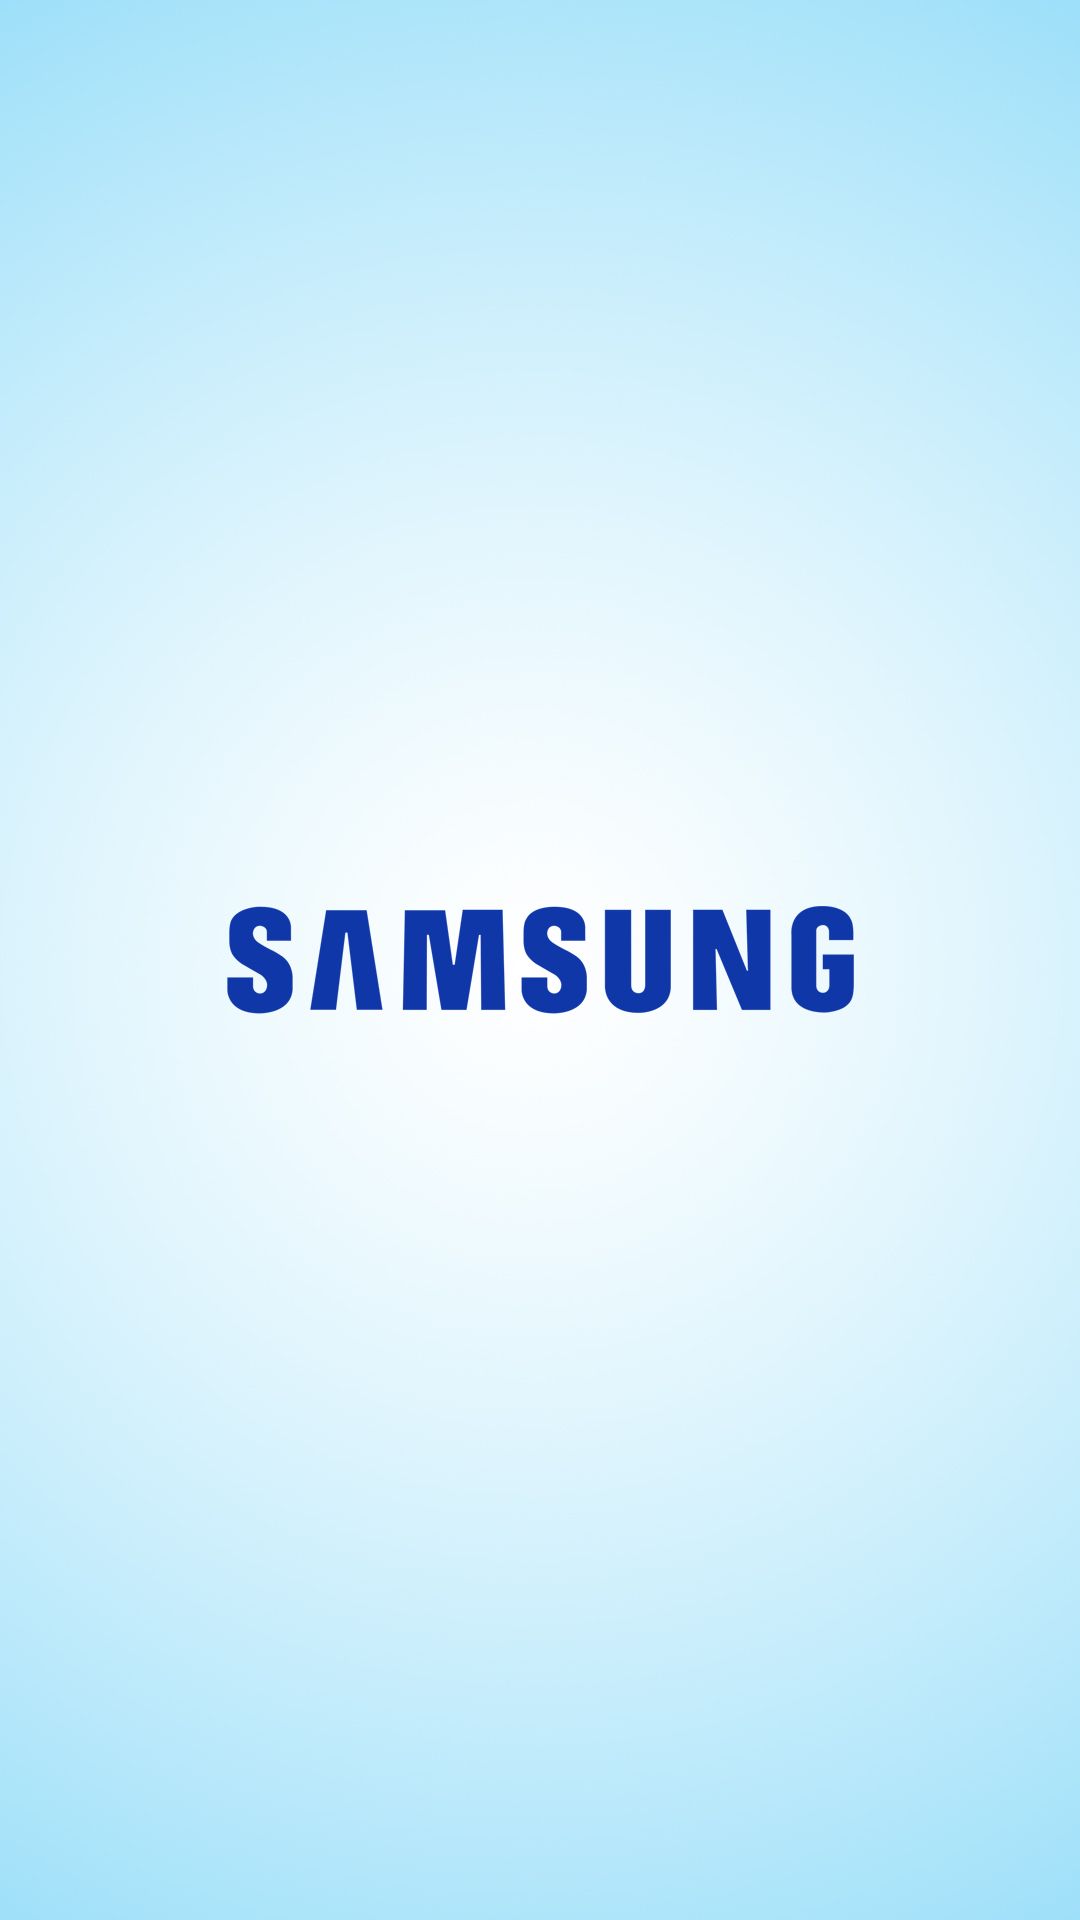 Samsung Logo Mobile Phone full HD wallpaper